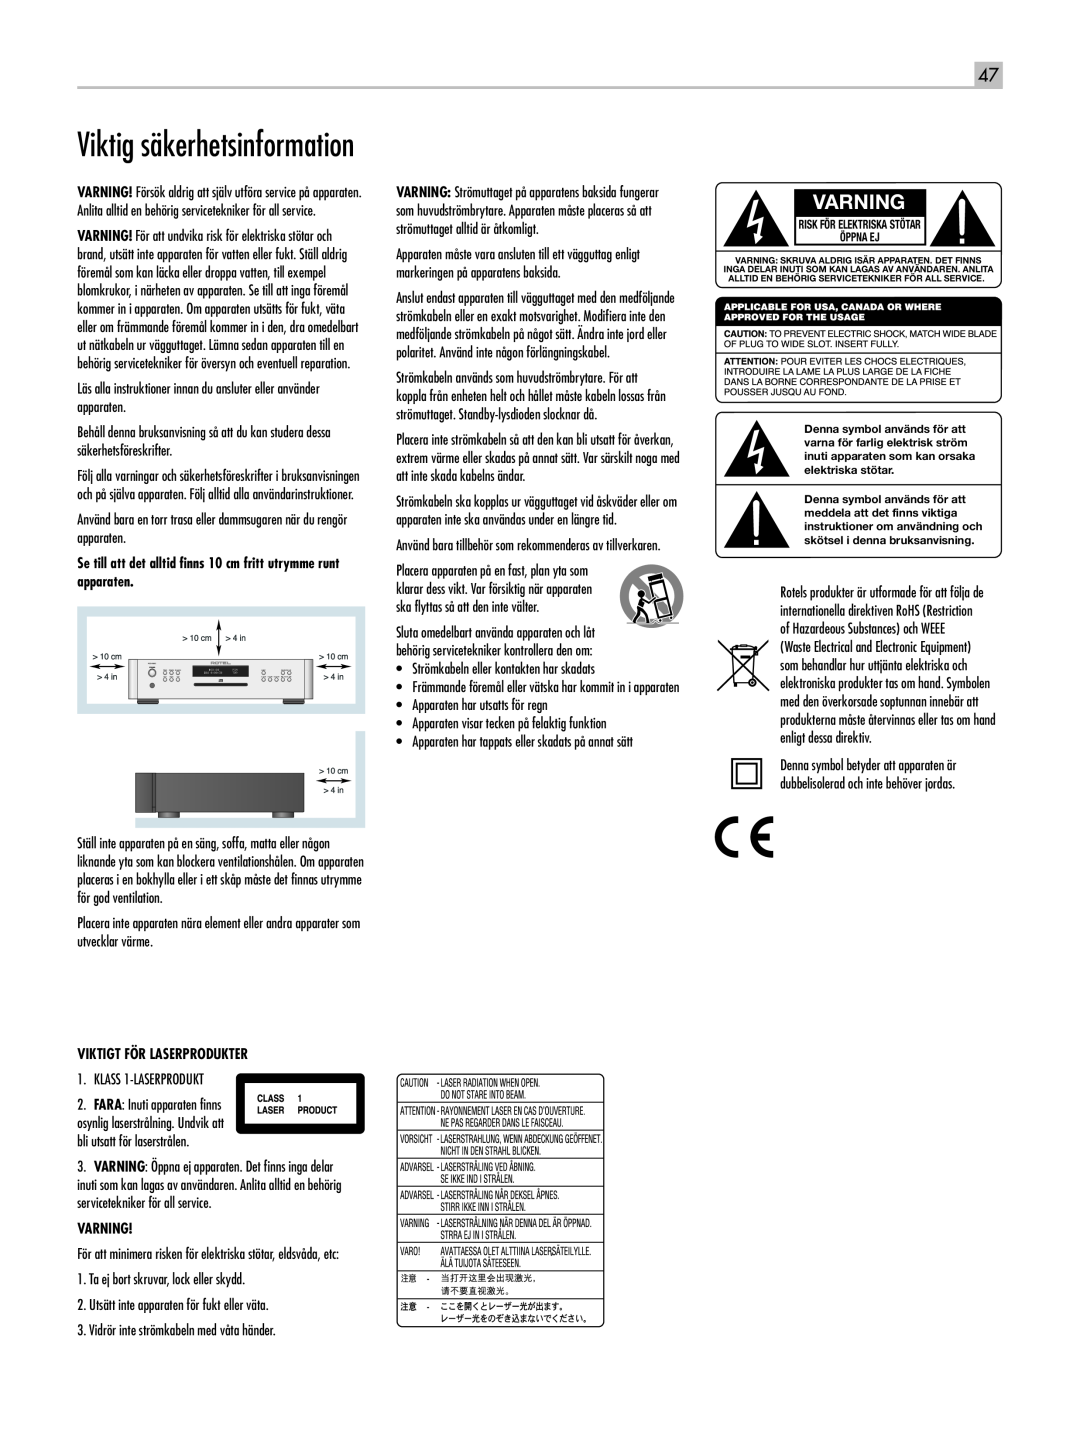 Rotel RCD-1520 owner manual Viktig säkerhetsinformation, Varning 